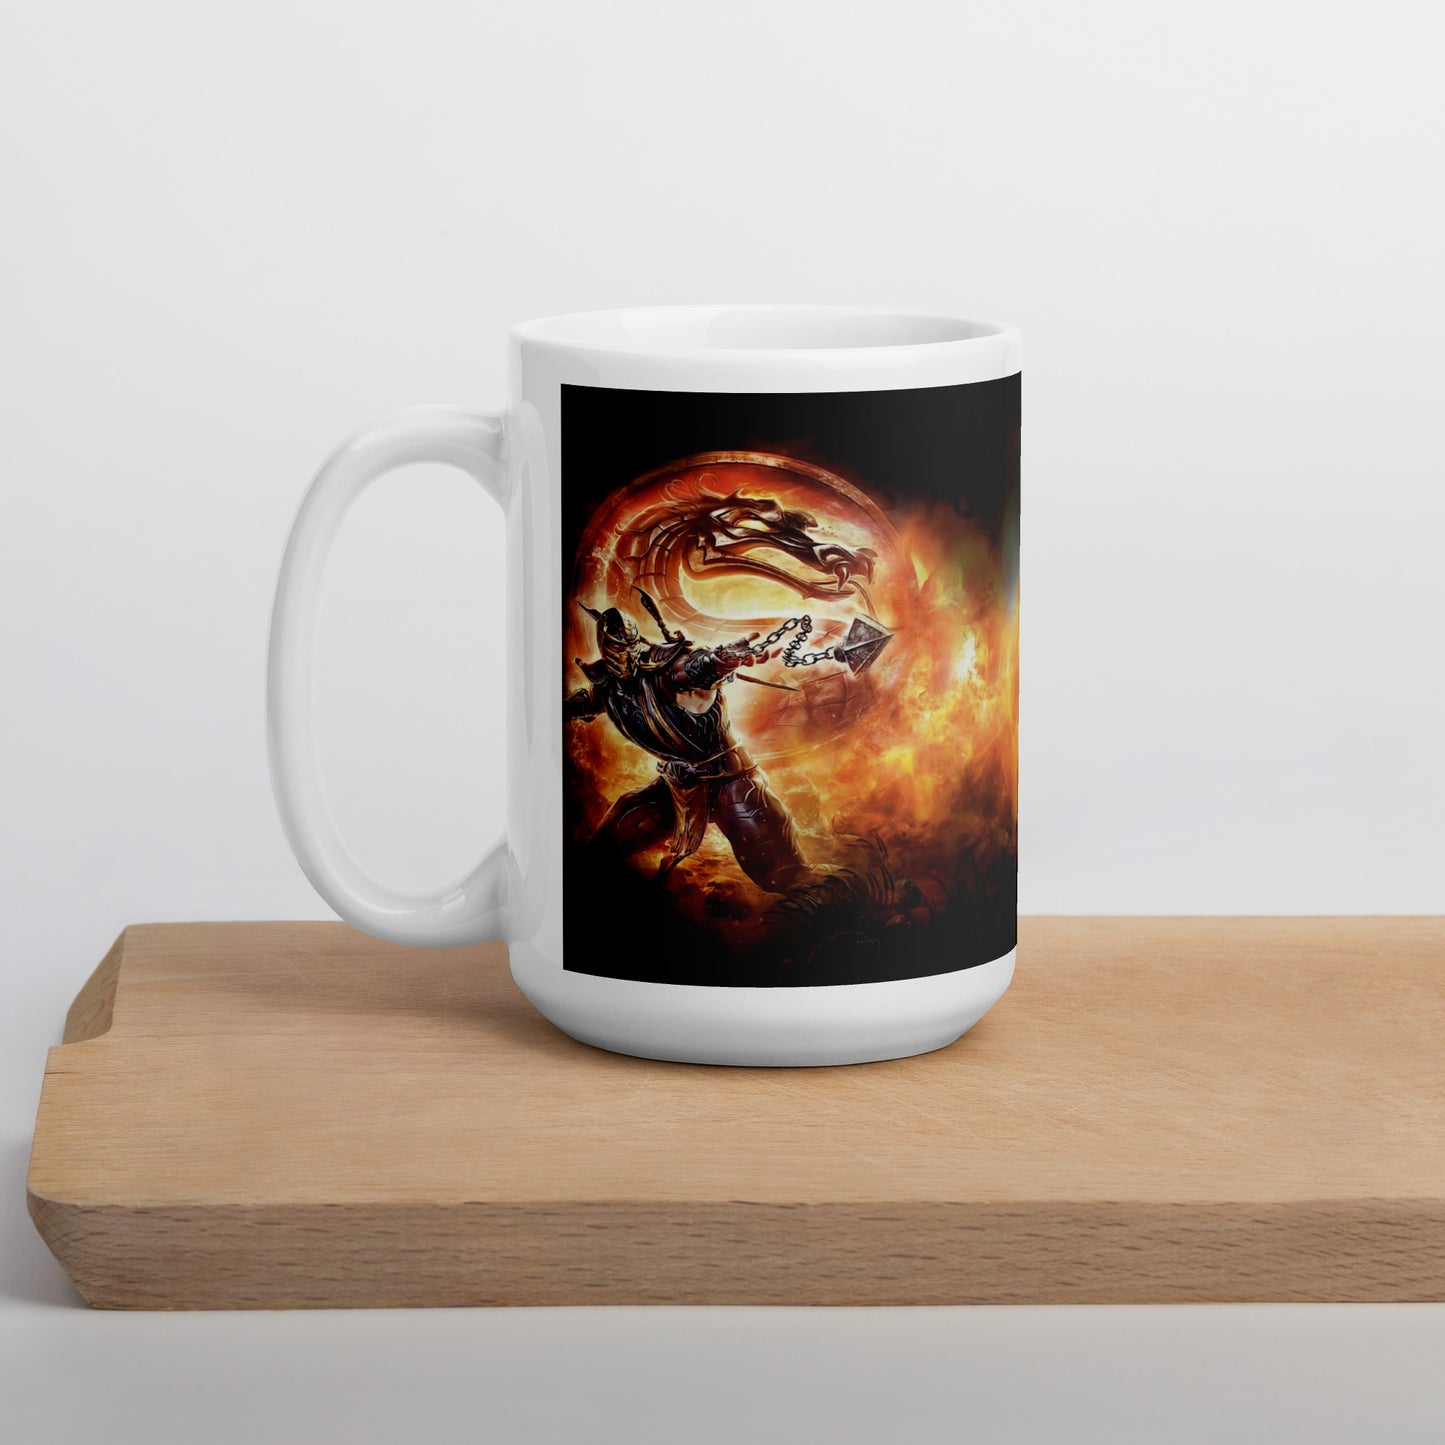 Mortal Kombat 9 Video Game Mug 